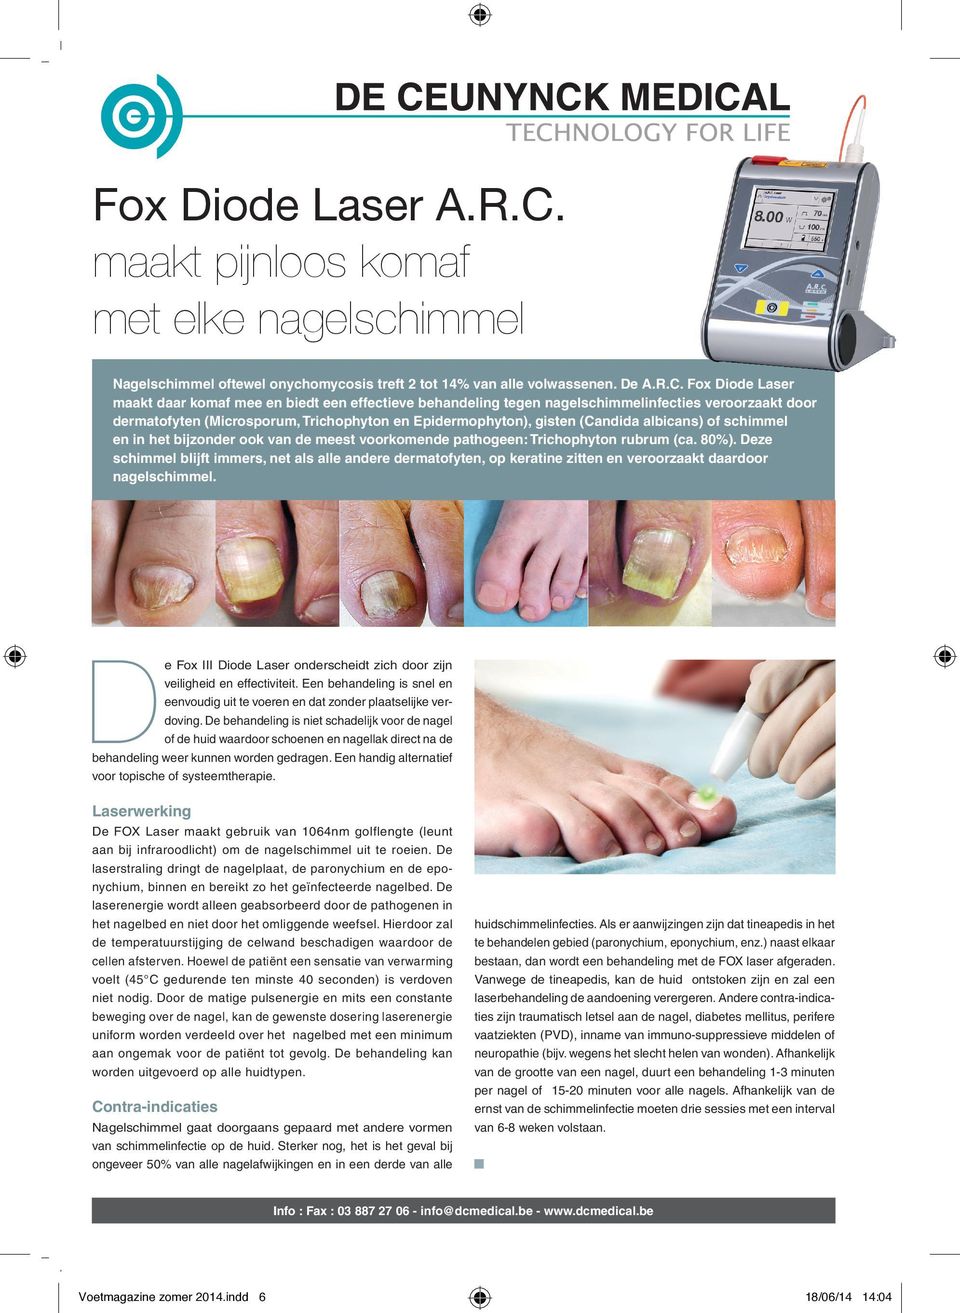 Fox Diode Laser maakt daar komaf mee en biedt een effectieve behandeling tegen nagelschimmelinfecties veroorzaakt door dermatofyten (Microsporum, Trichophyton en Epidermophyton), gisten (Candida